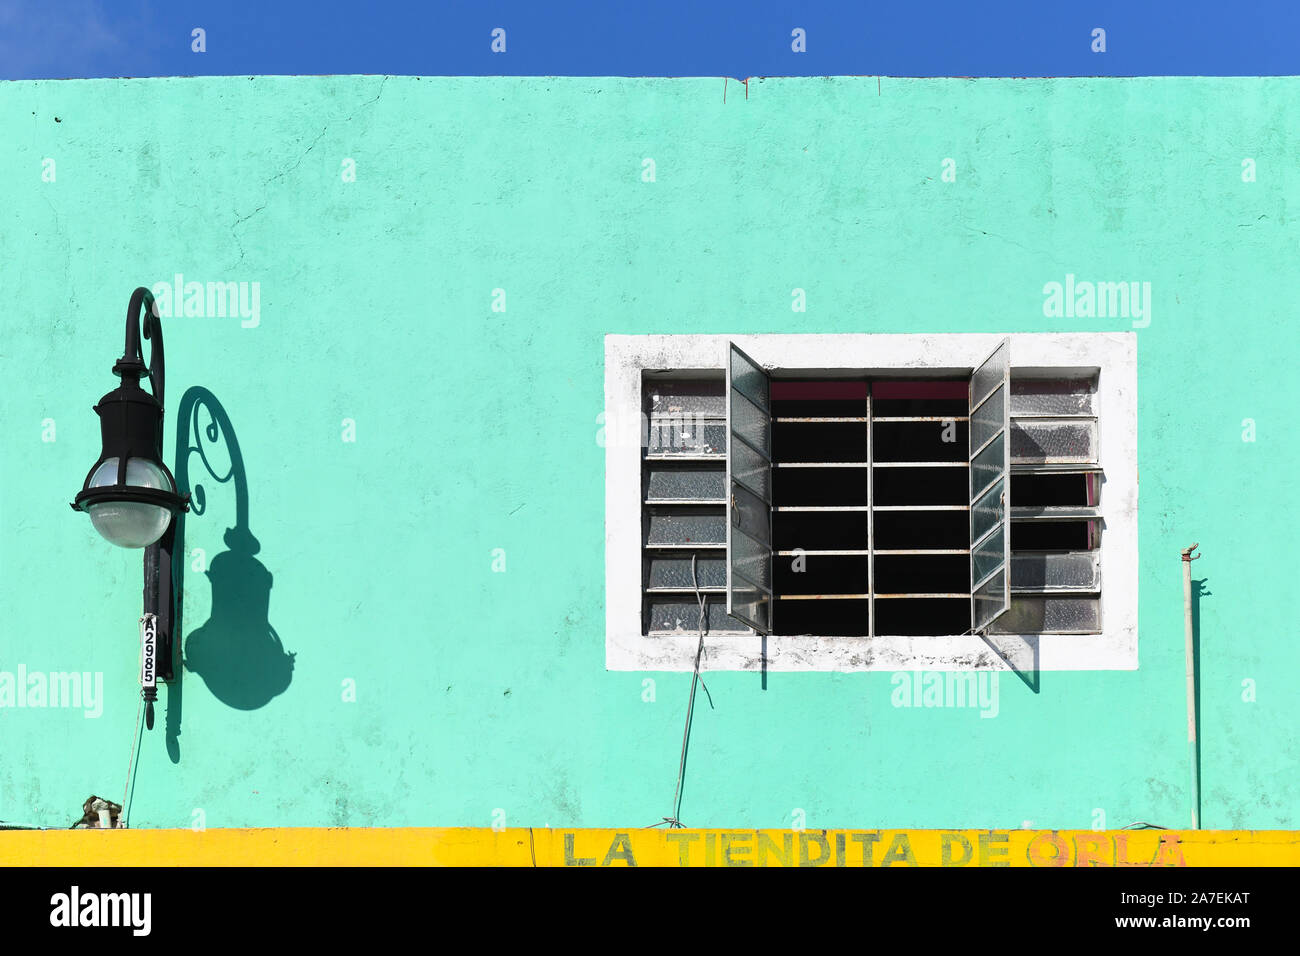 Detail of a facade, Merida, Mexico Stock Photo